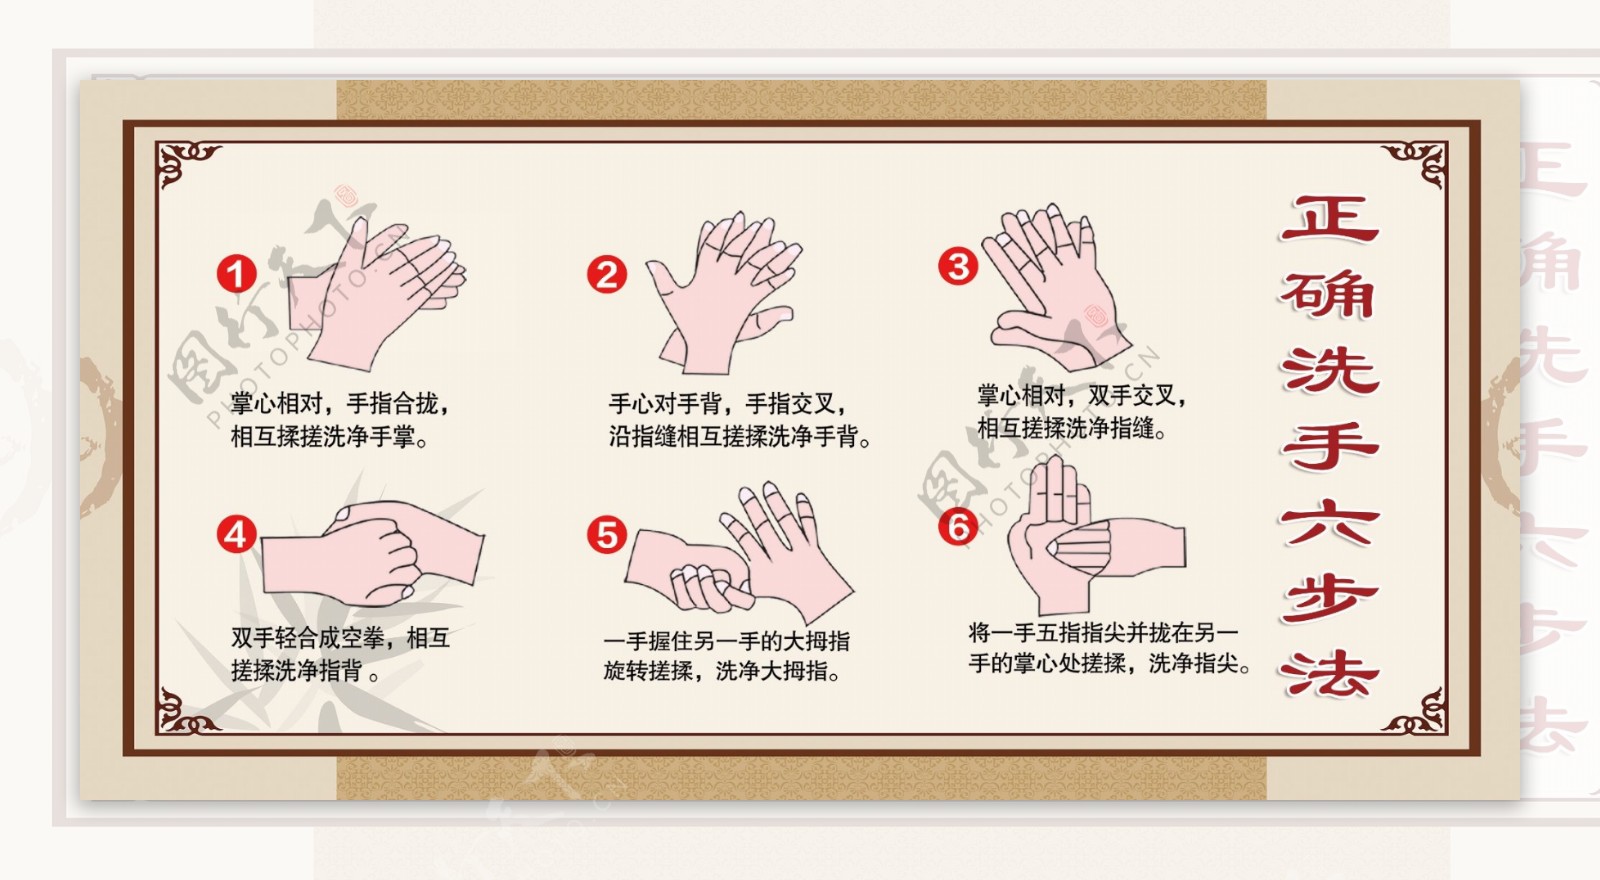 洗手六步法图片